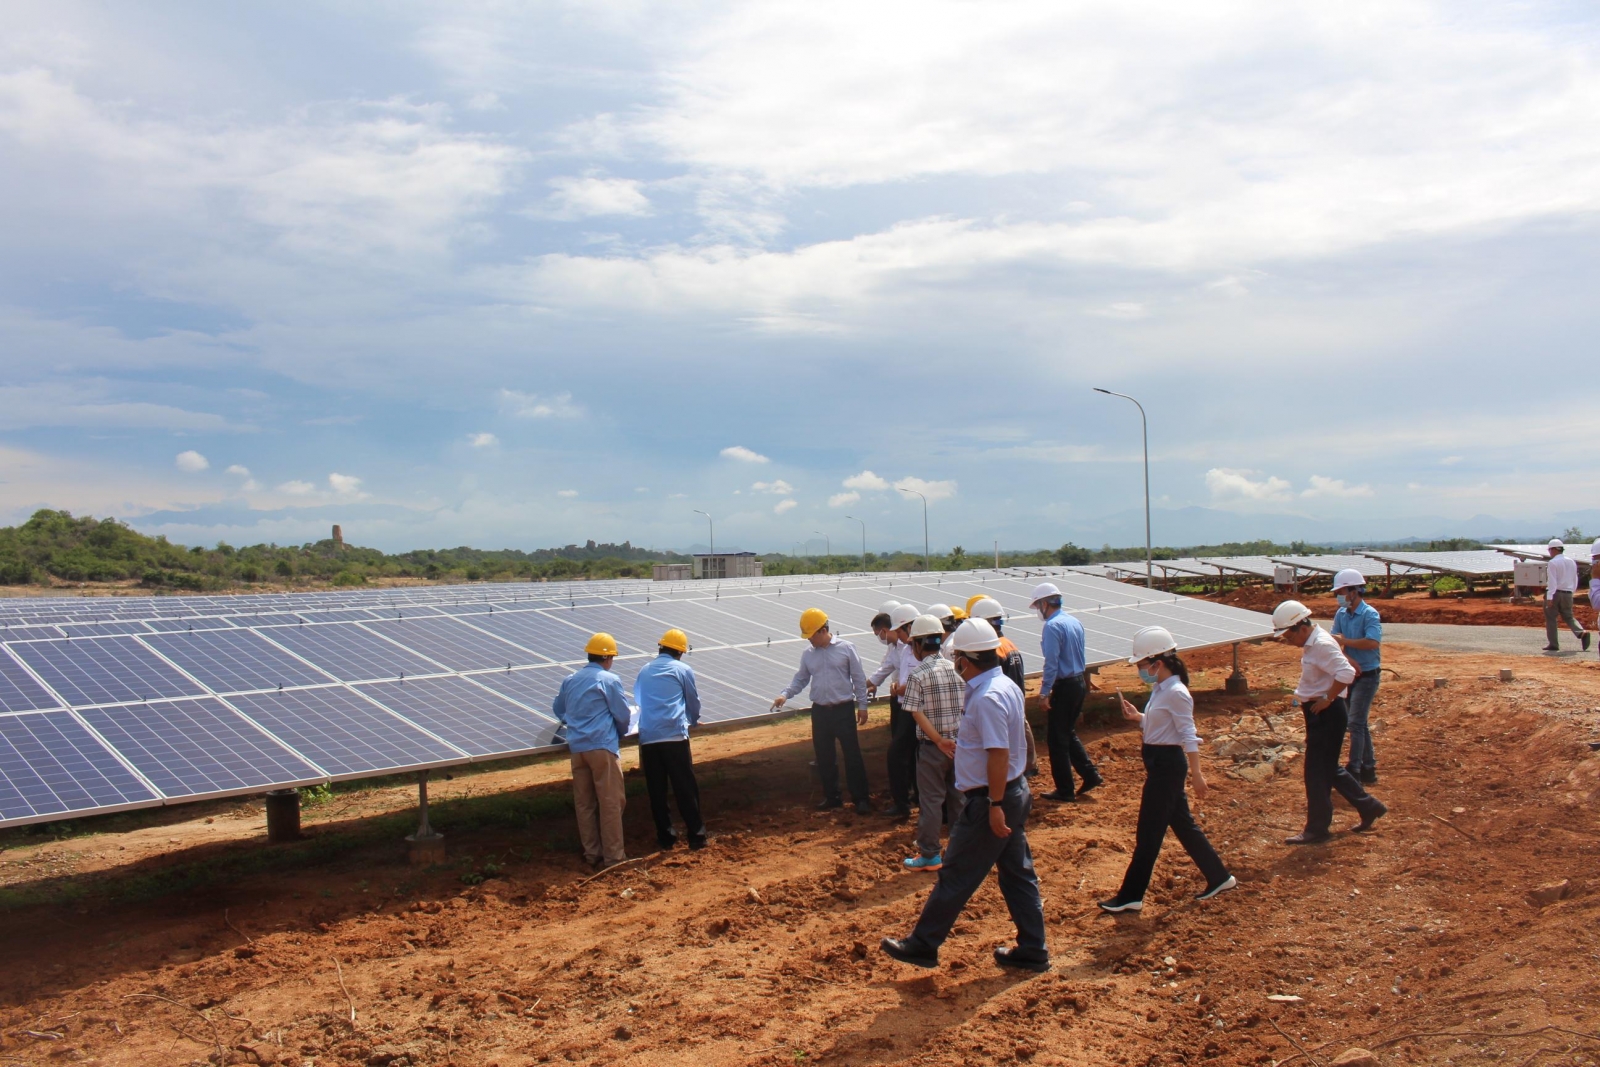 Sau khi đưa vào sử dụng Nhà máy điện mặt trời Phước Thái 1, EVN tiếp tục đầu tư xây dựng Nhà máy điện mặt trời Phước Thái 2 và Nhà máy điện mặt trời Phước Thái 3. Ảnh: VGP.